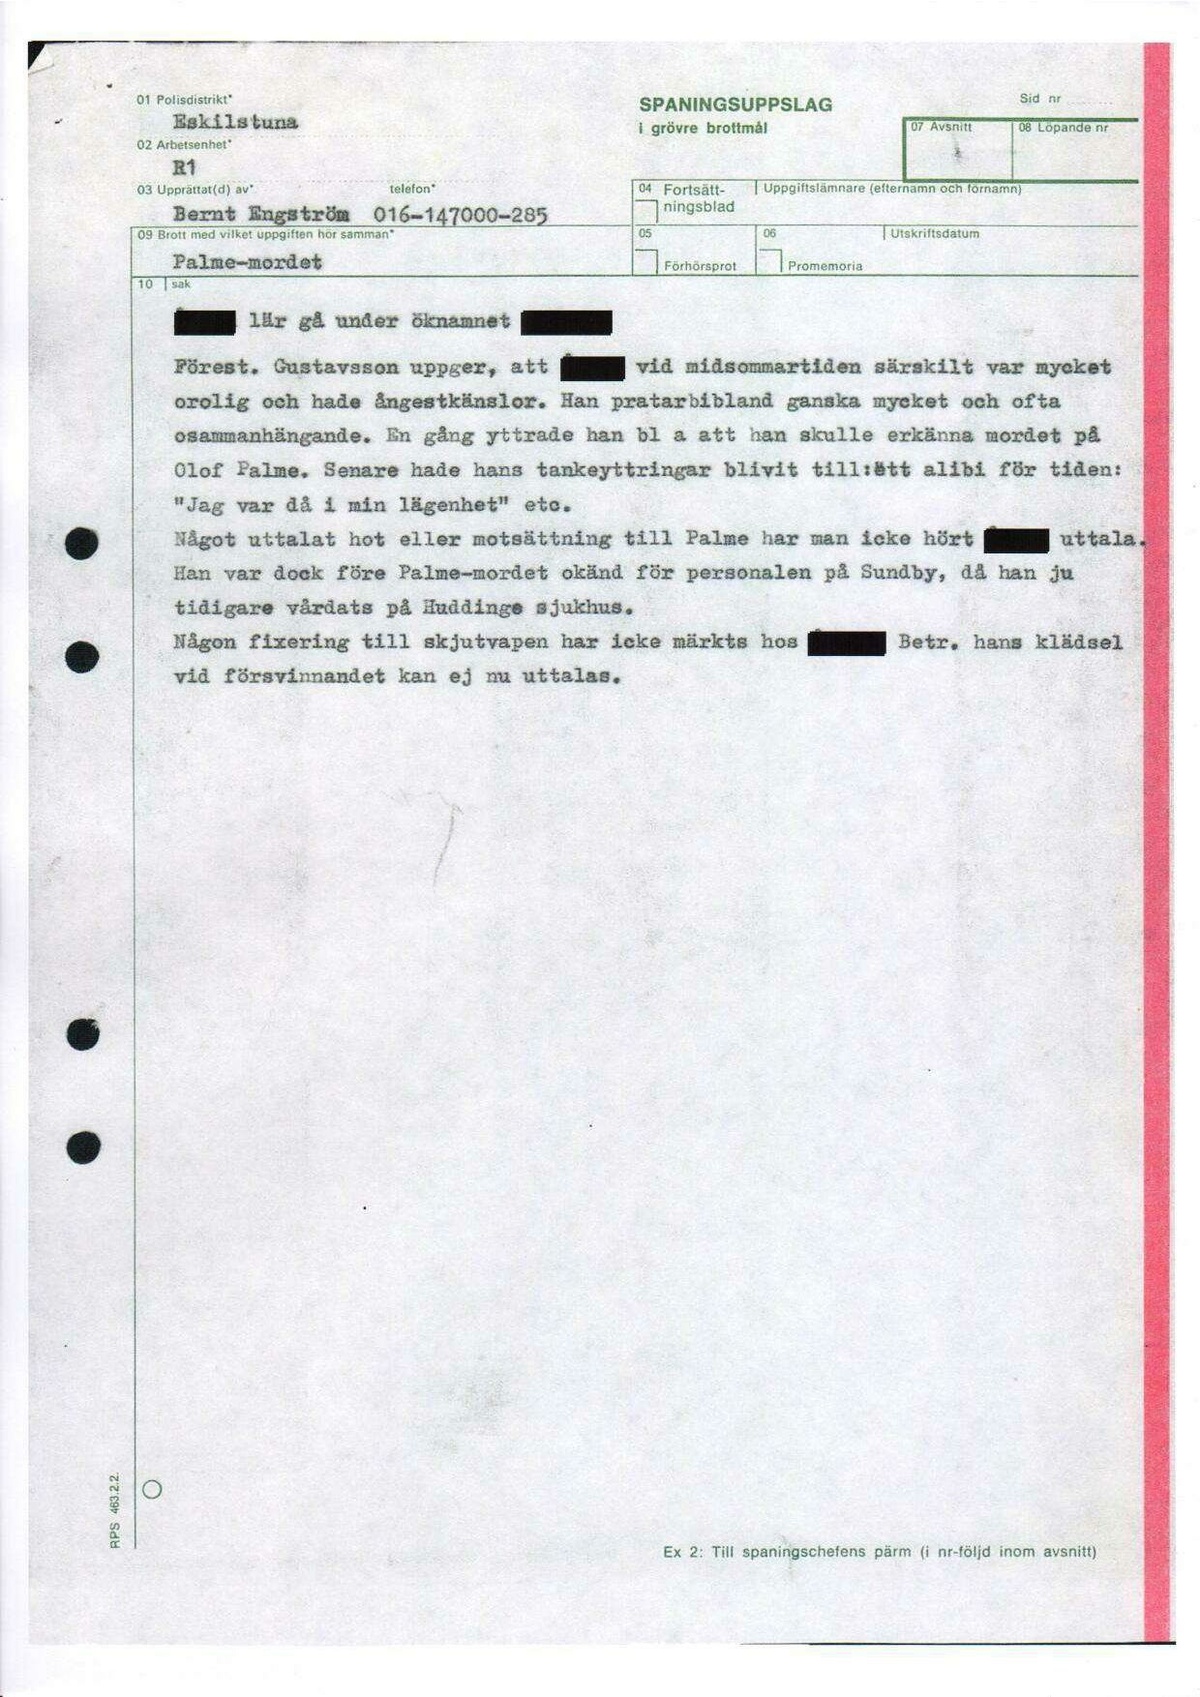 Pol-1986-09-18 1000 D501-00 Erkännanden Palmemordet.pdf